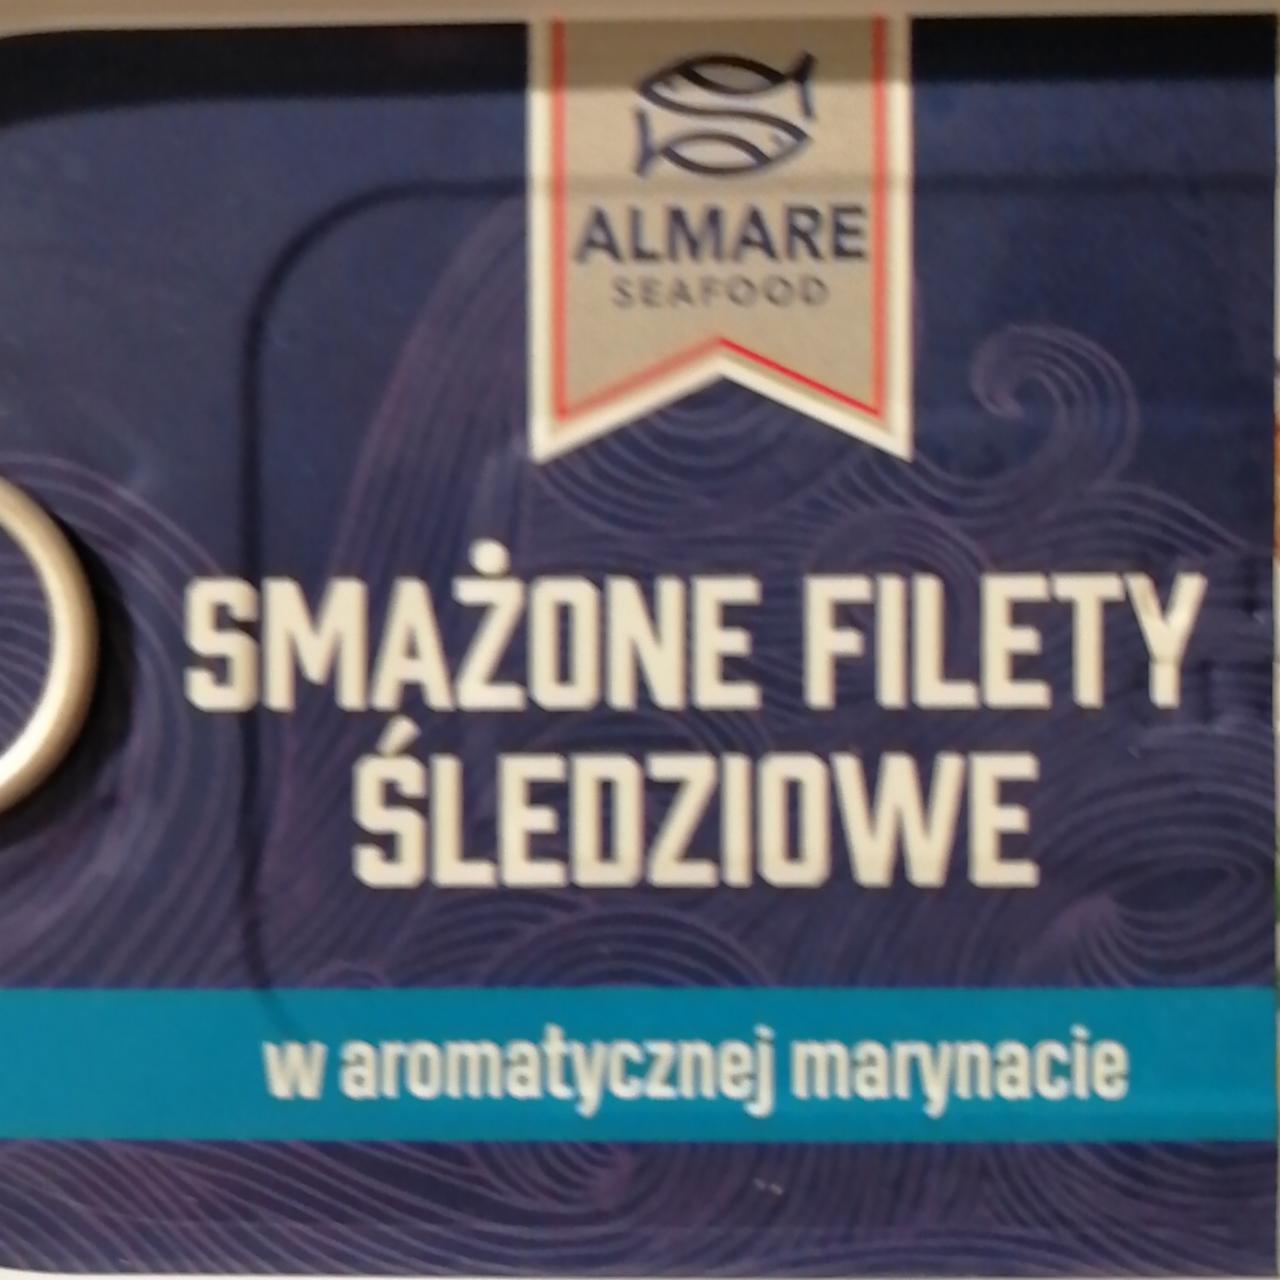 Zdjęcia - Smażone filety śledziowe w aromatycznej marynacie Almare seafood